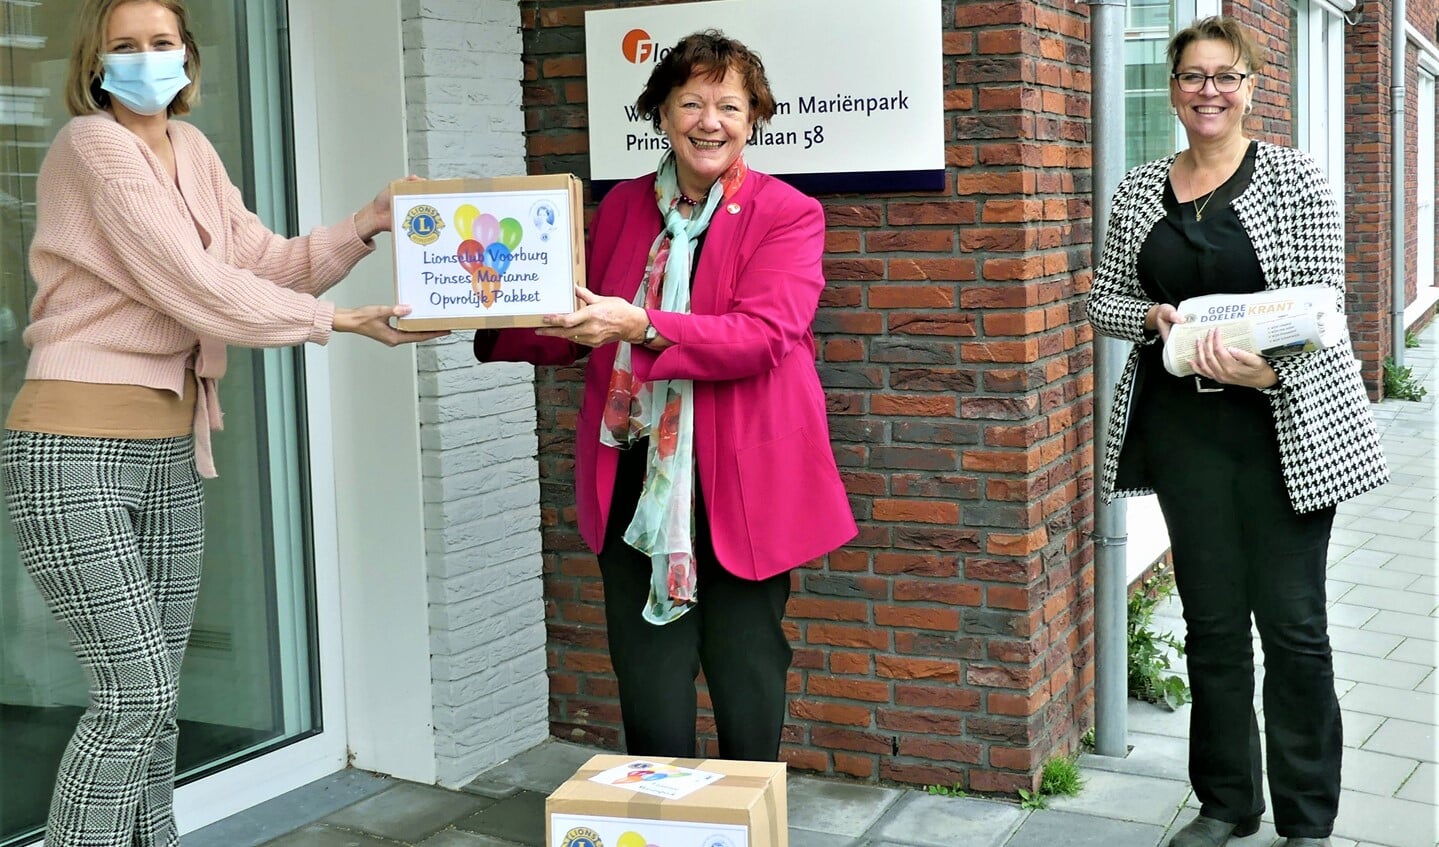 Andrea Brons van Mariënpark ontvangt een pakket van de Lions Marianne Knijnenburg en Nicole de Groot. (foto: pr).